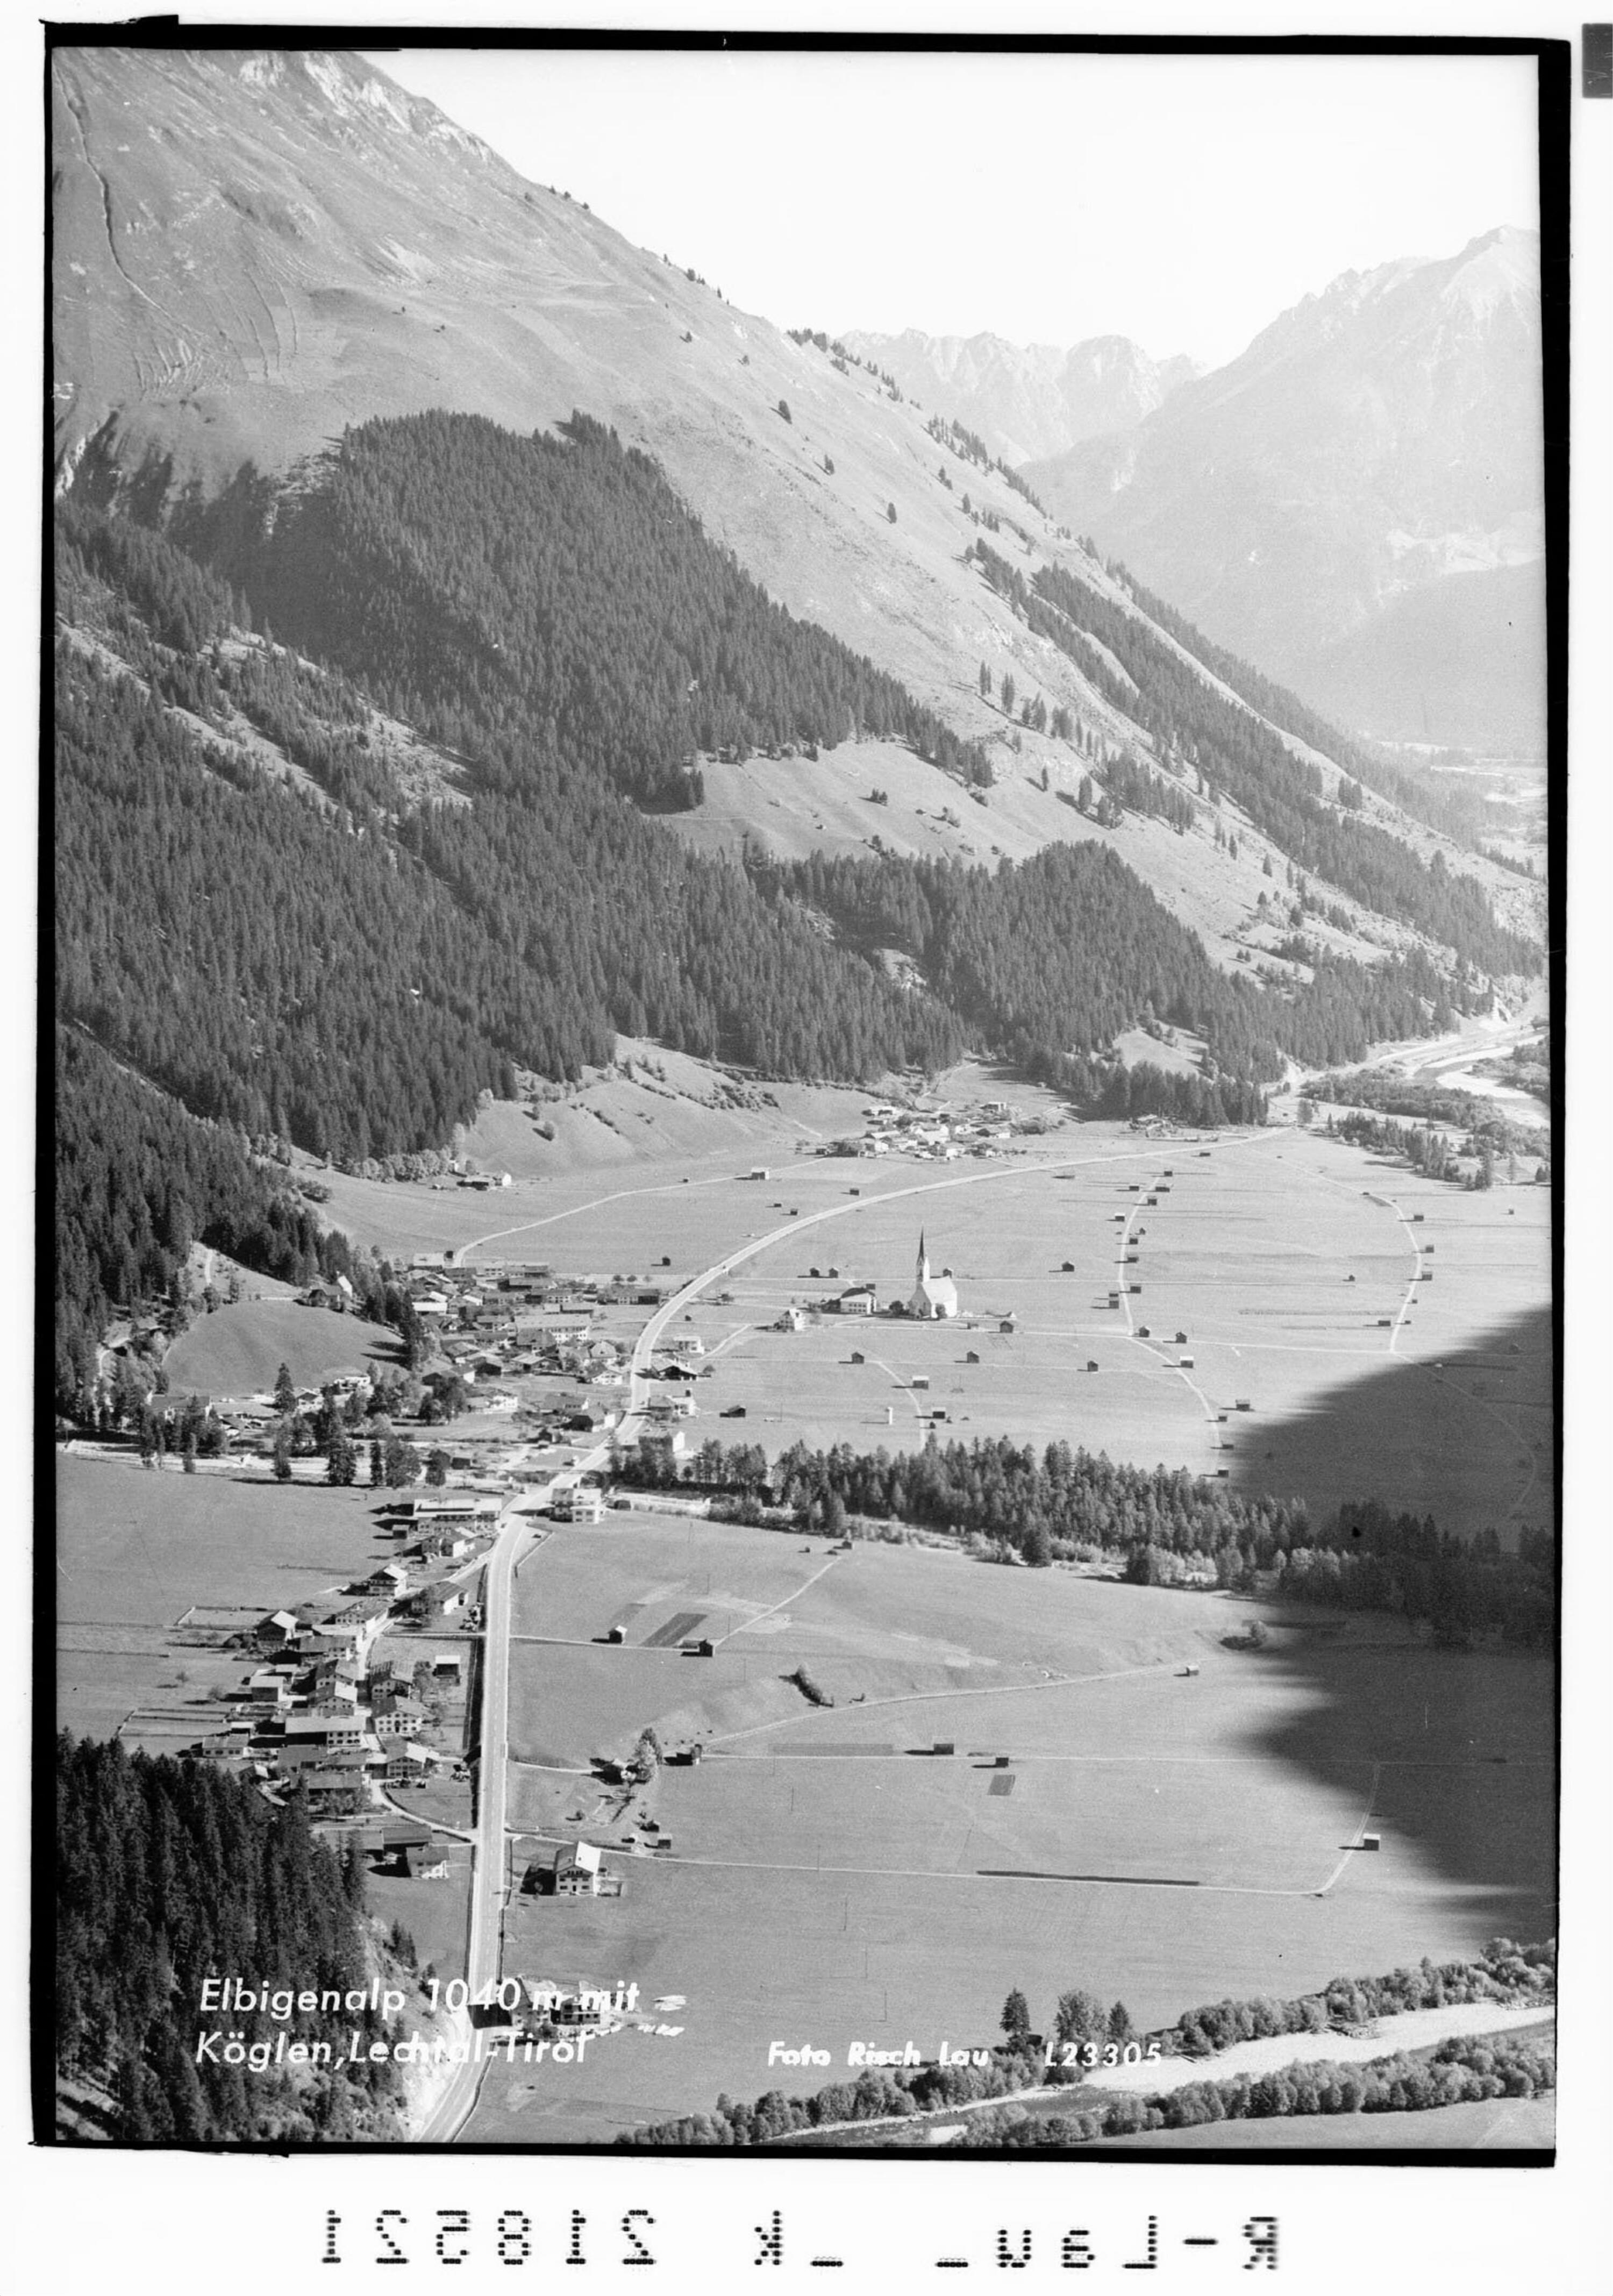 Elbigenalp 1040 m mit Köglen / Lechtal Tirol></div>


    <hr>
    <div class=